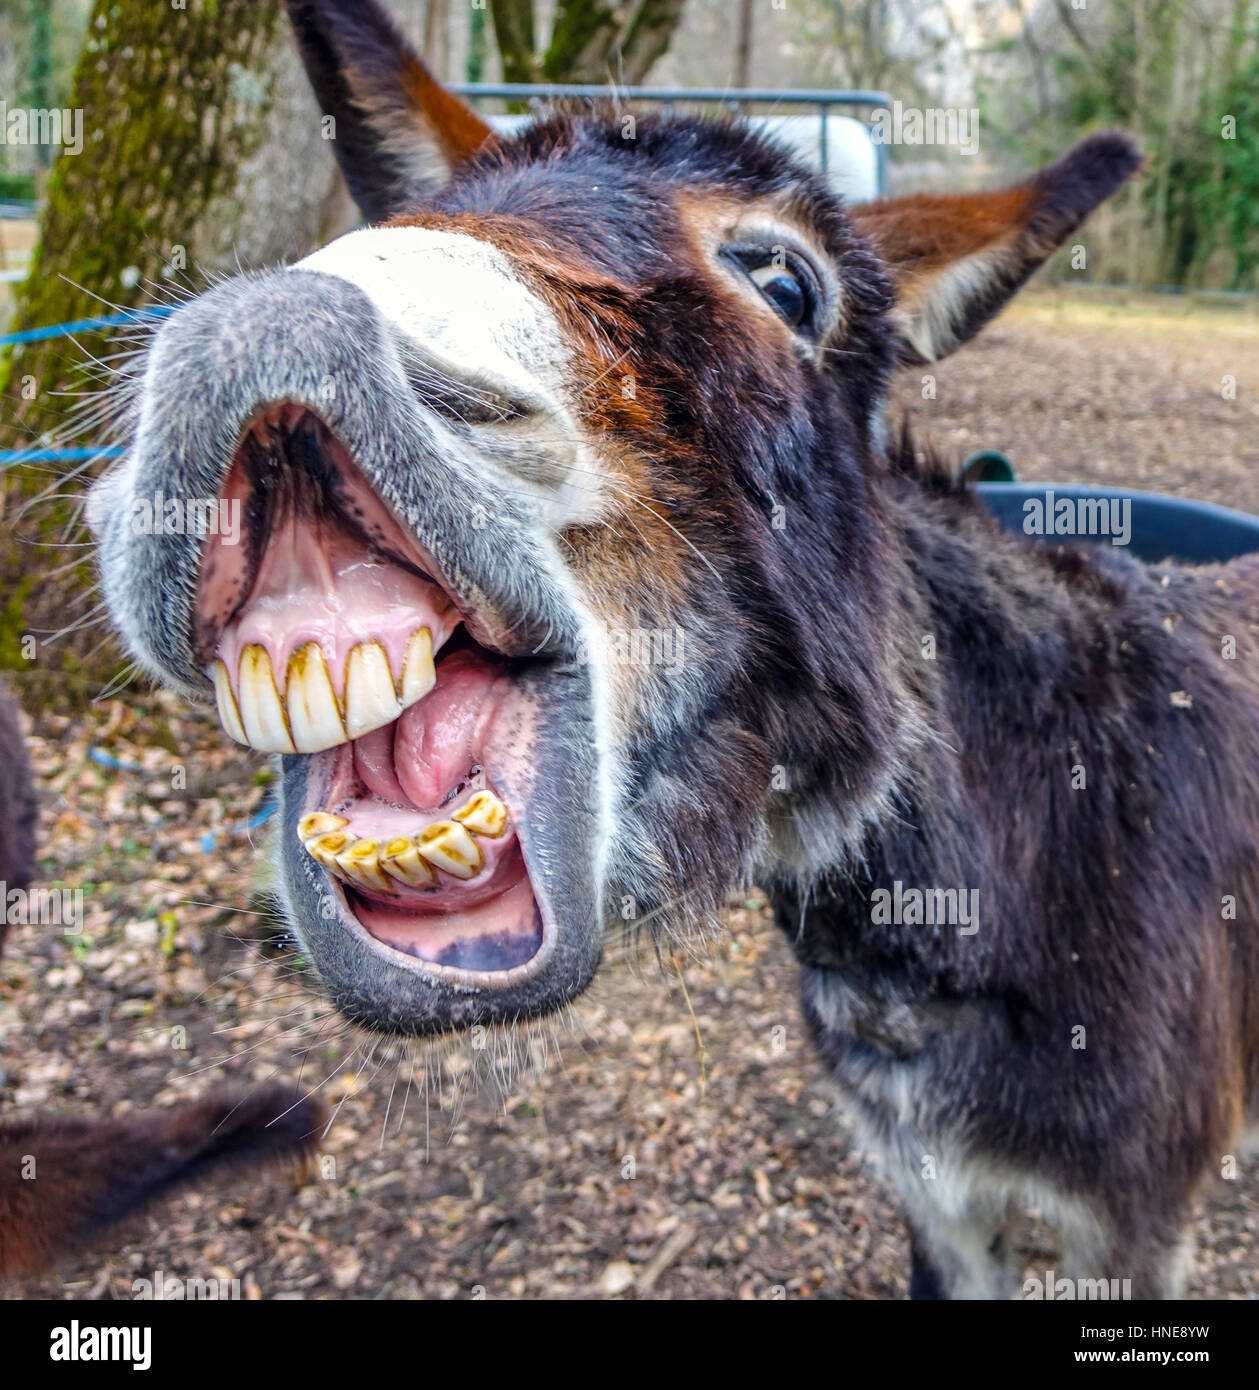 donkey-smiling-showing-big-set-of-teeth-HNE8YW.jpg